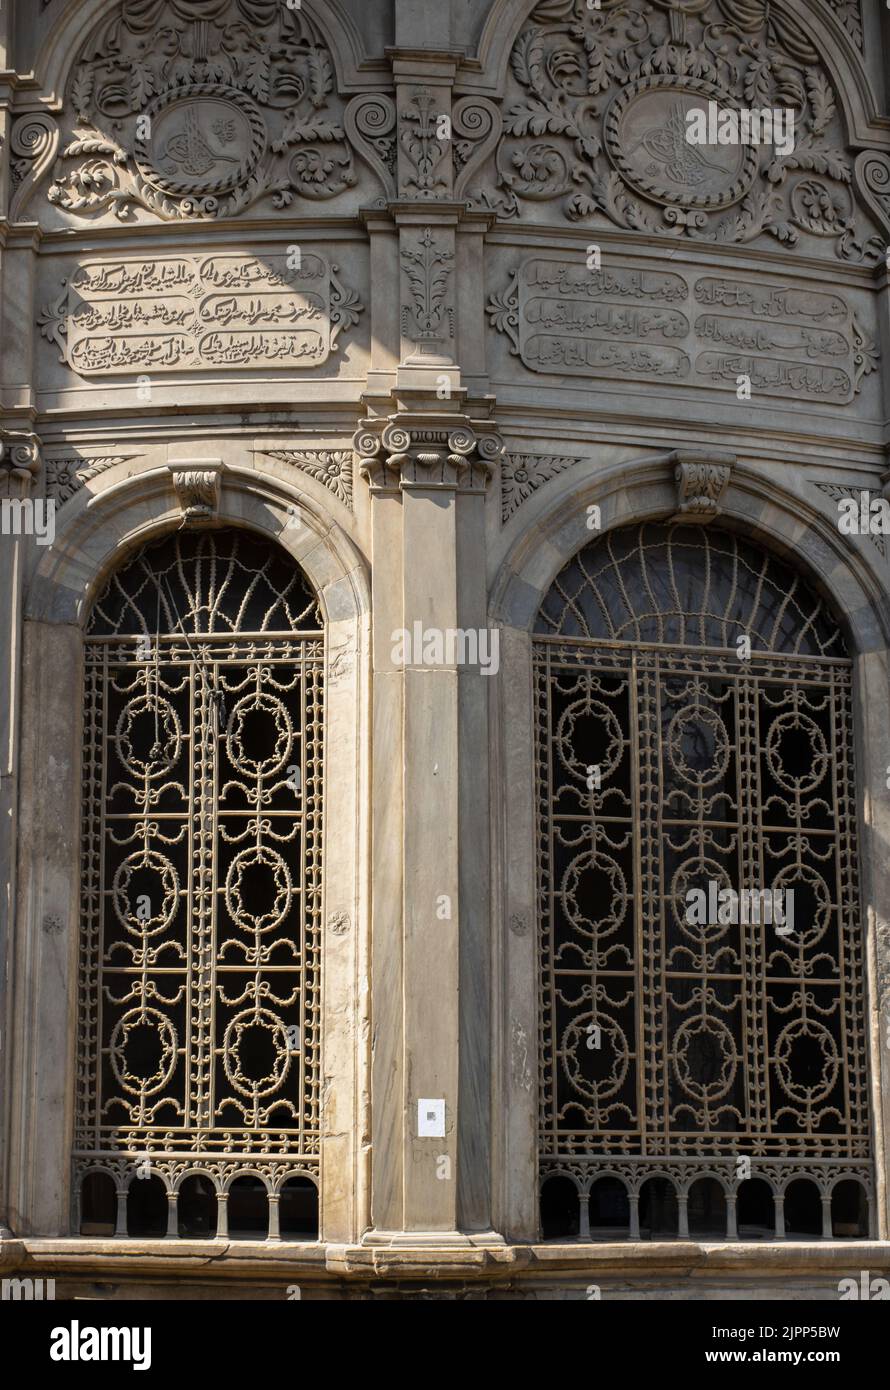 SABIL Mohamed Ali situé dans la rue El-Moez murs extérieurs en pierre décorés de gravures arabes et de fenêtres voûtées. Banque D'Images